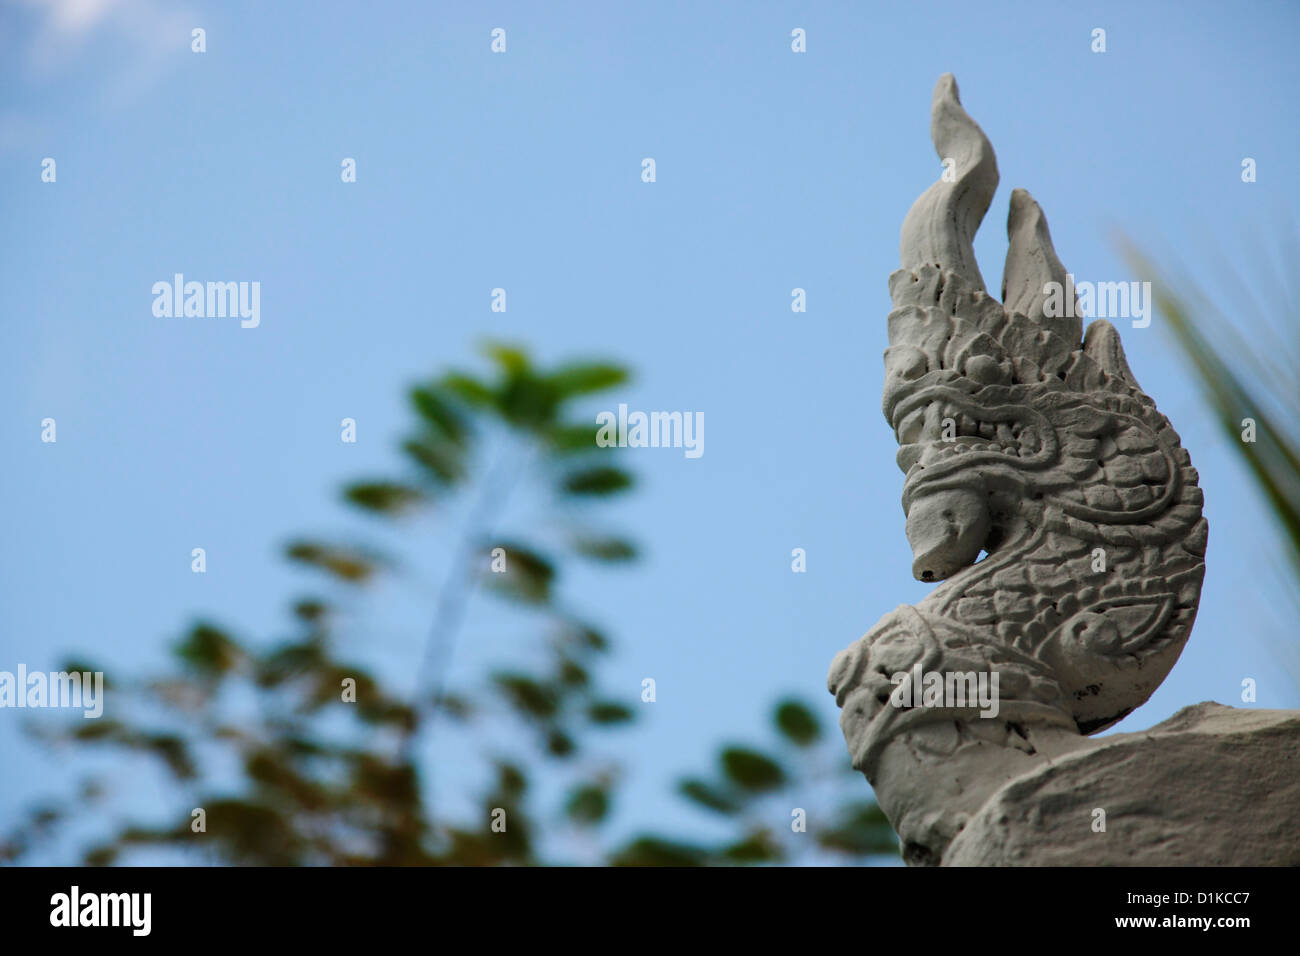 Stone deity, Cambodia Stock Photo